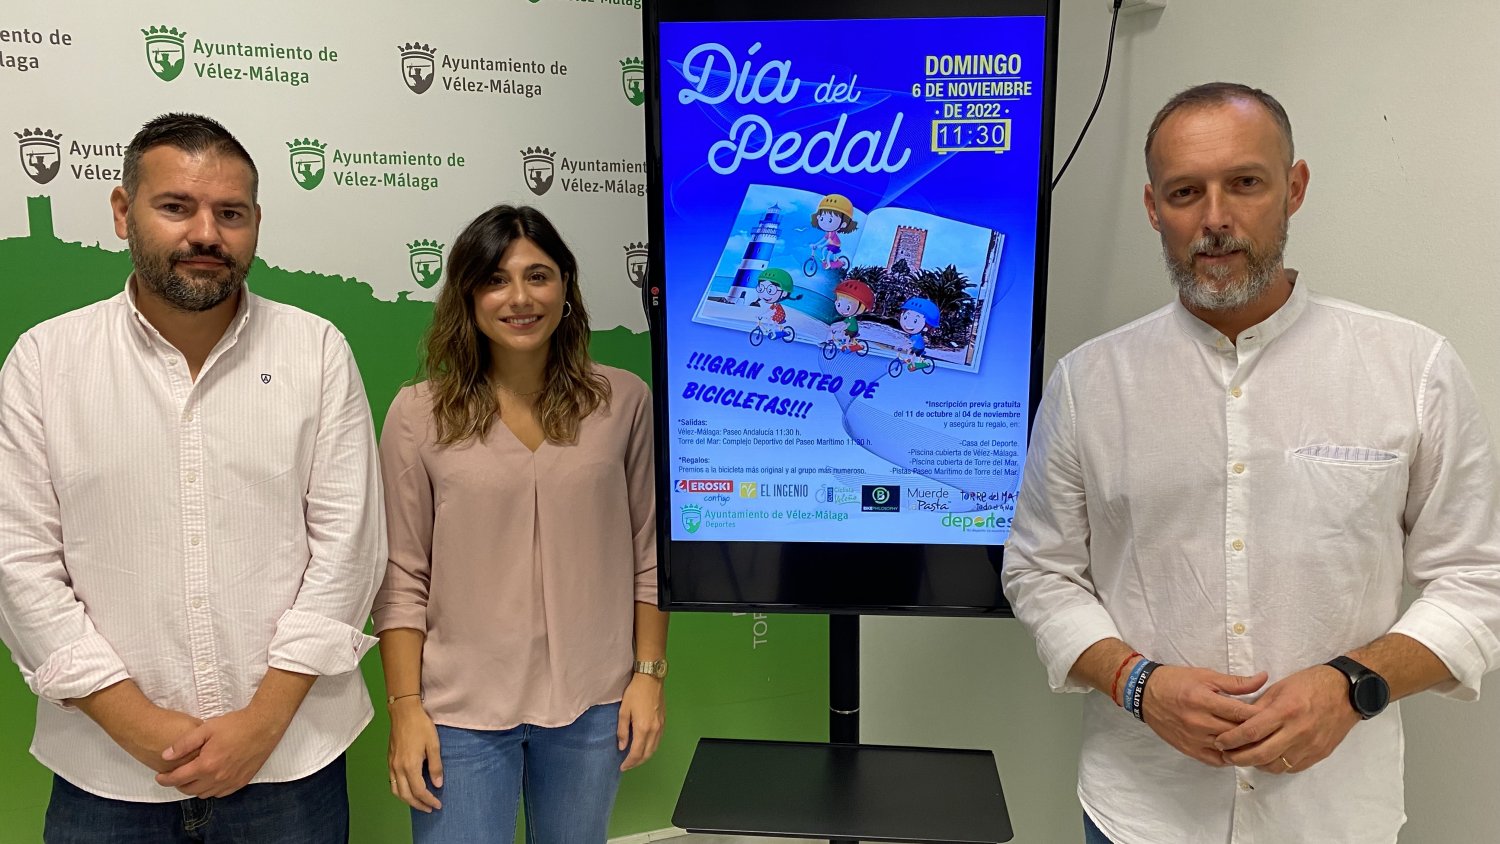 Vélez-Málaga y Torre del Mar celebrarán en noviembre una nueva edición del 'Día del Pedal'